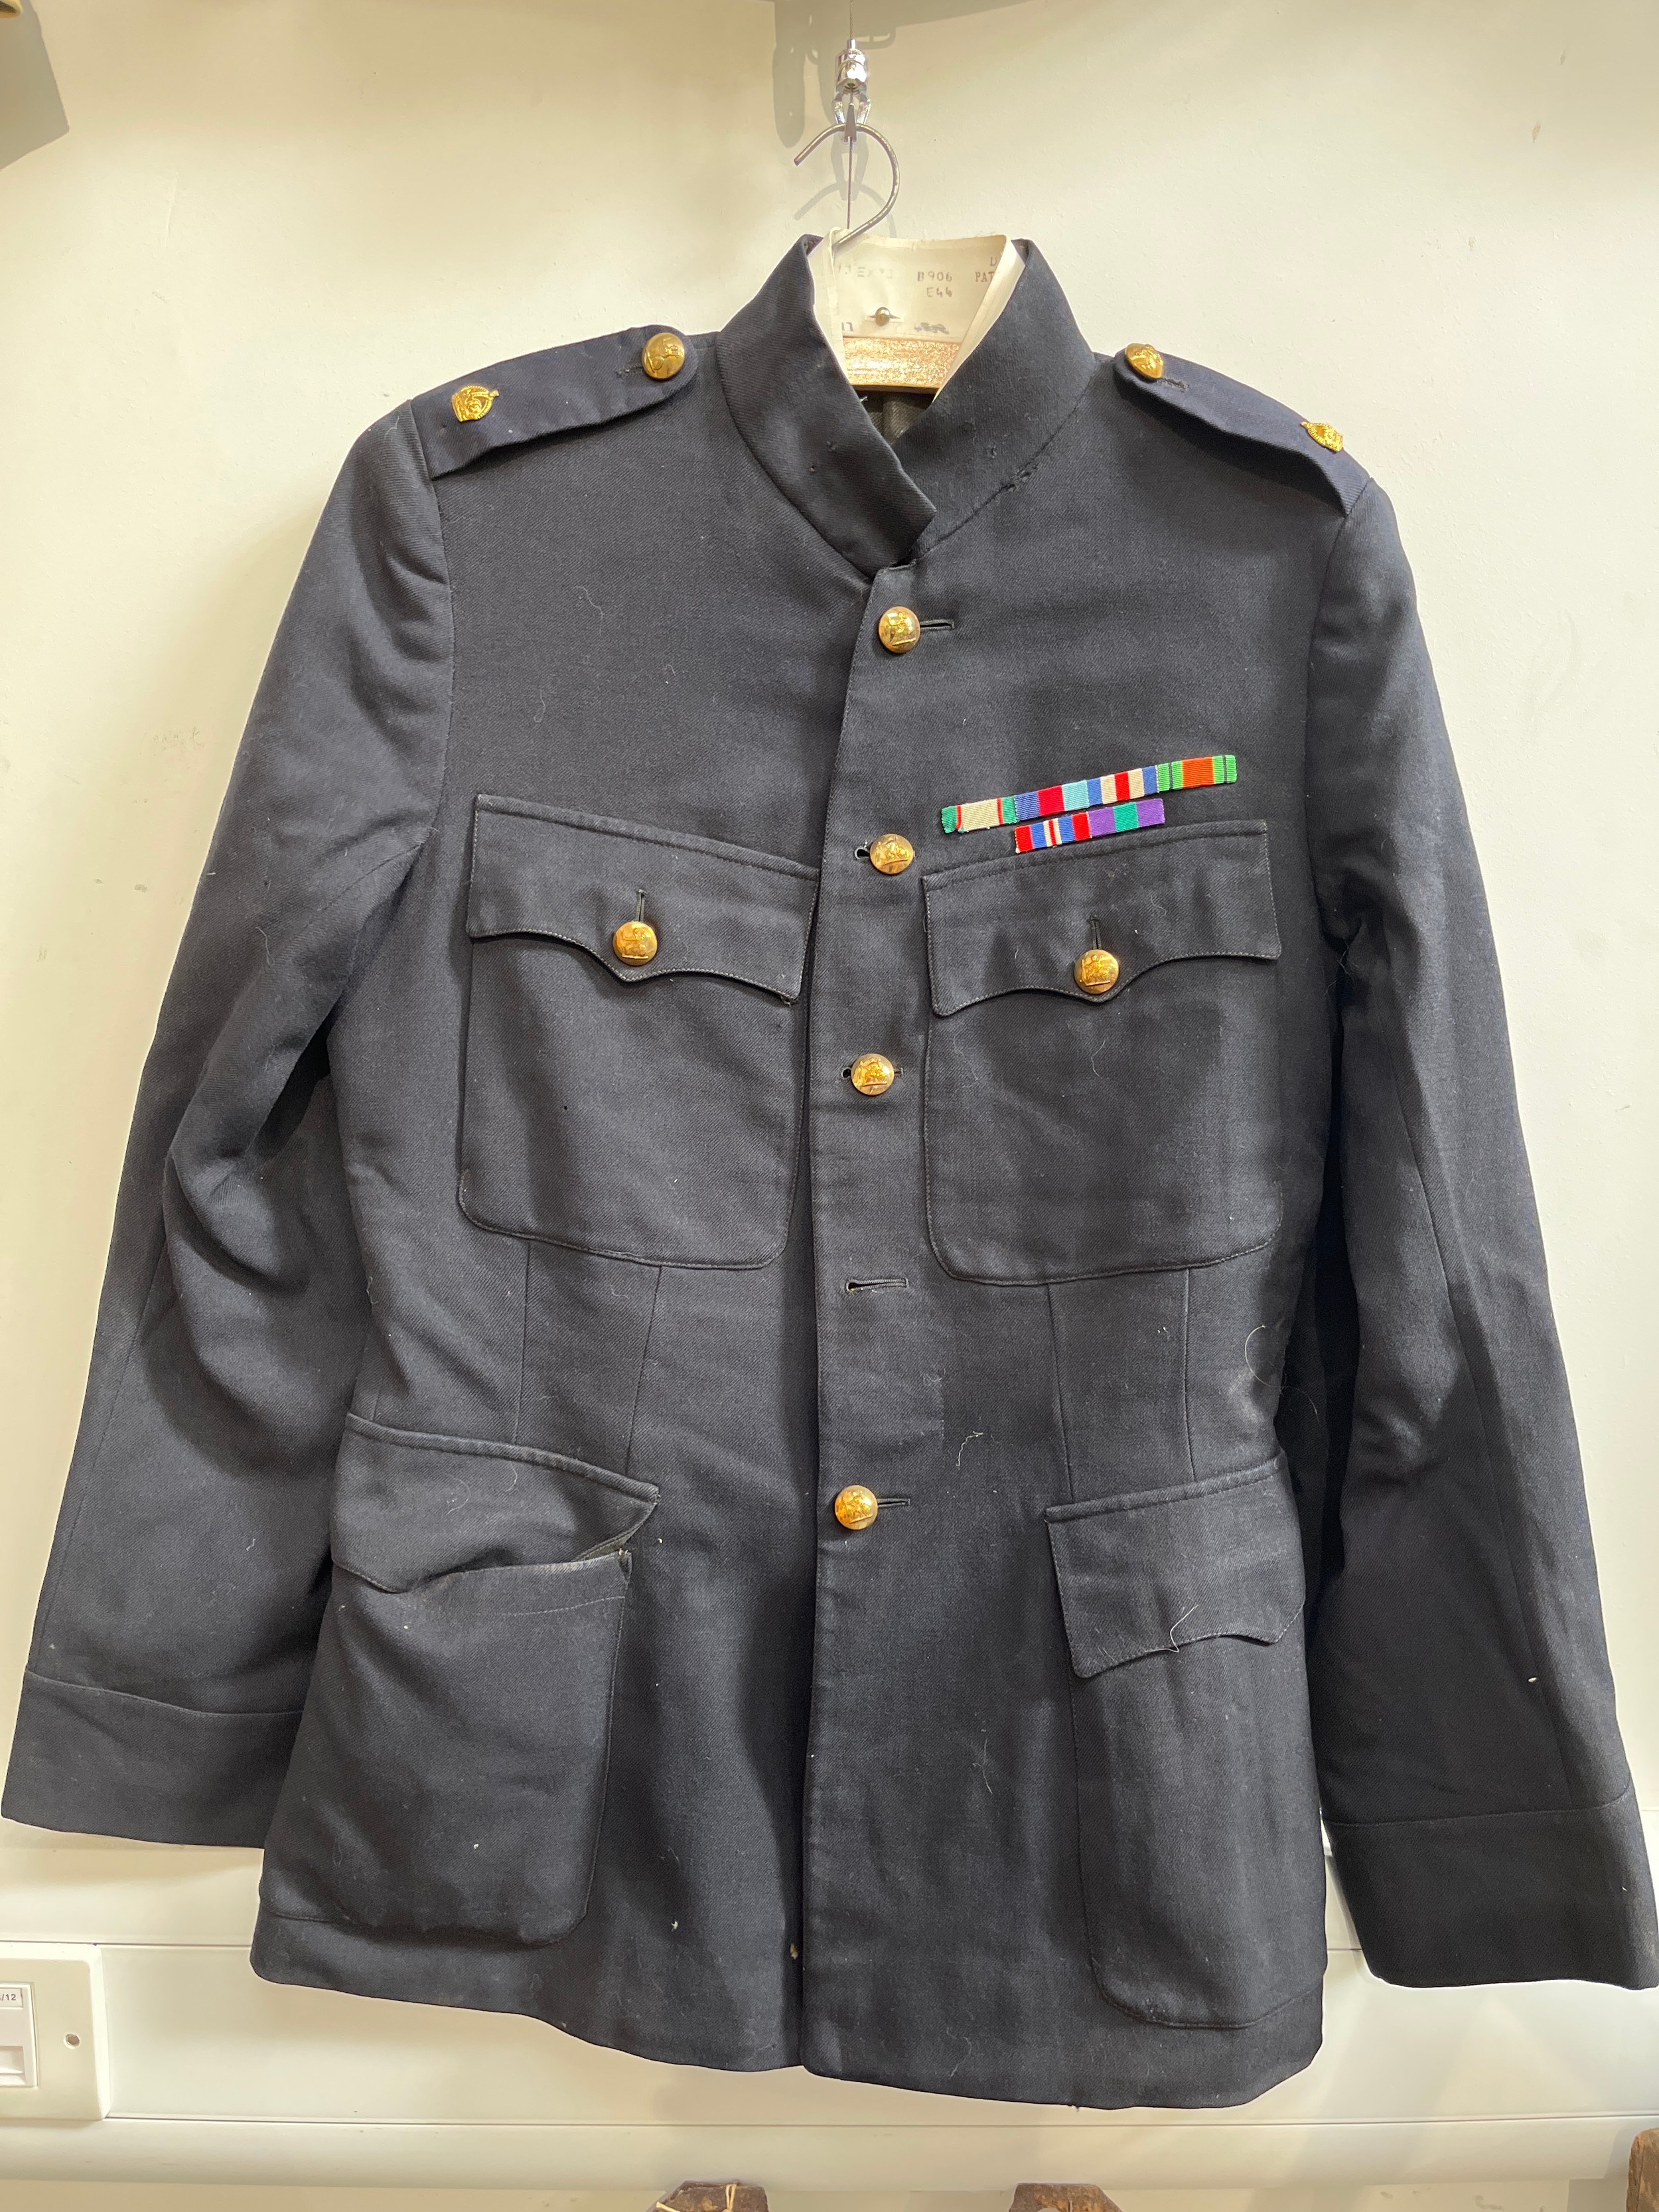 A Norfolk Regiment officer's dress jacket